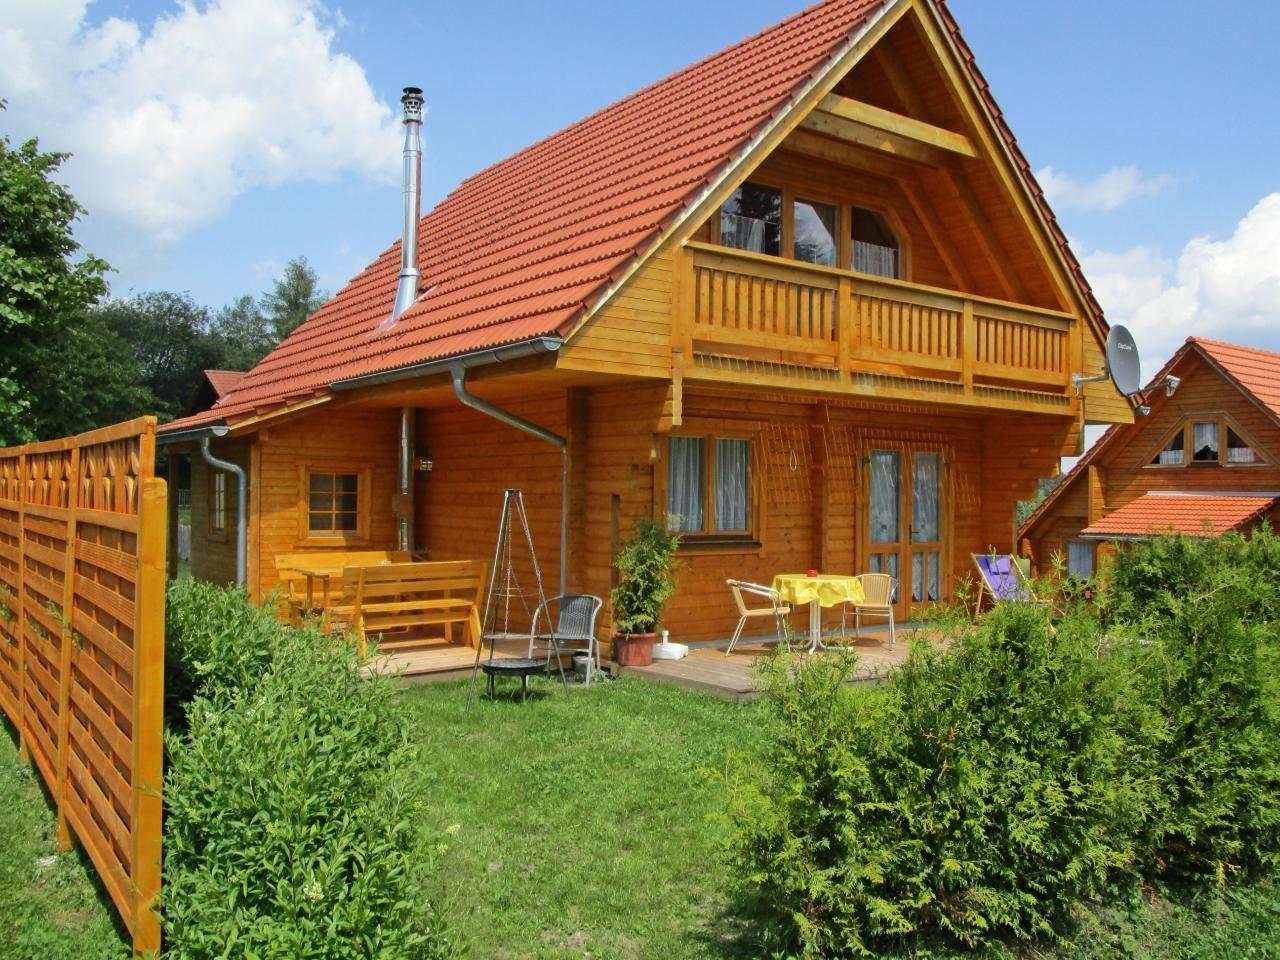 Ferienhaus in Philippsreut mit Kleiner Terrasse   Bayern